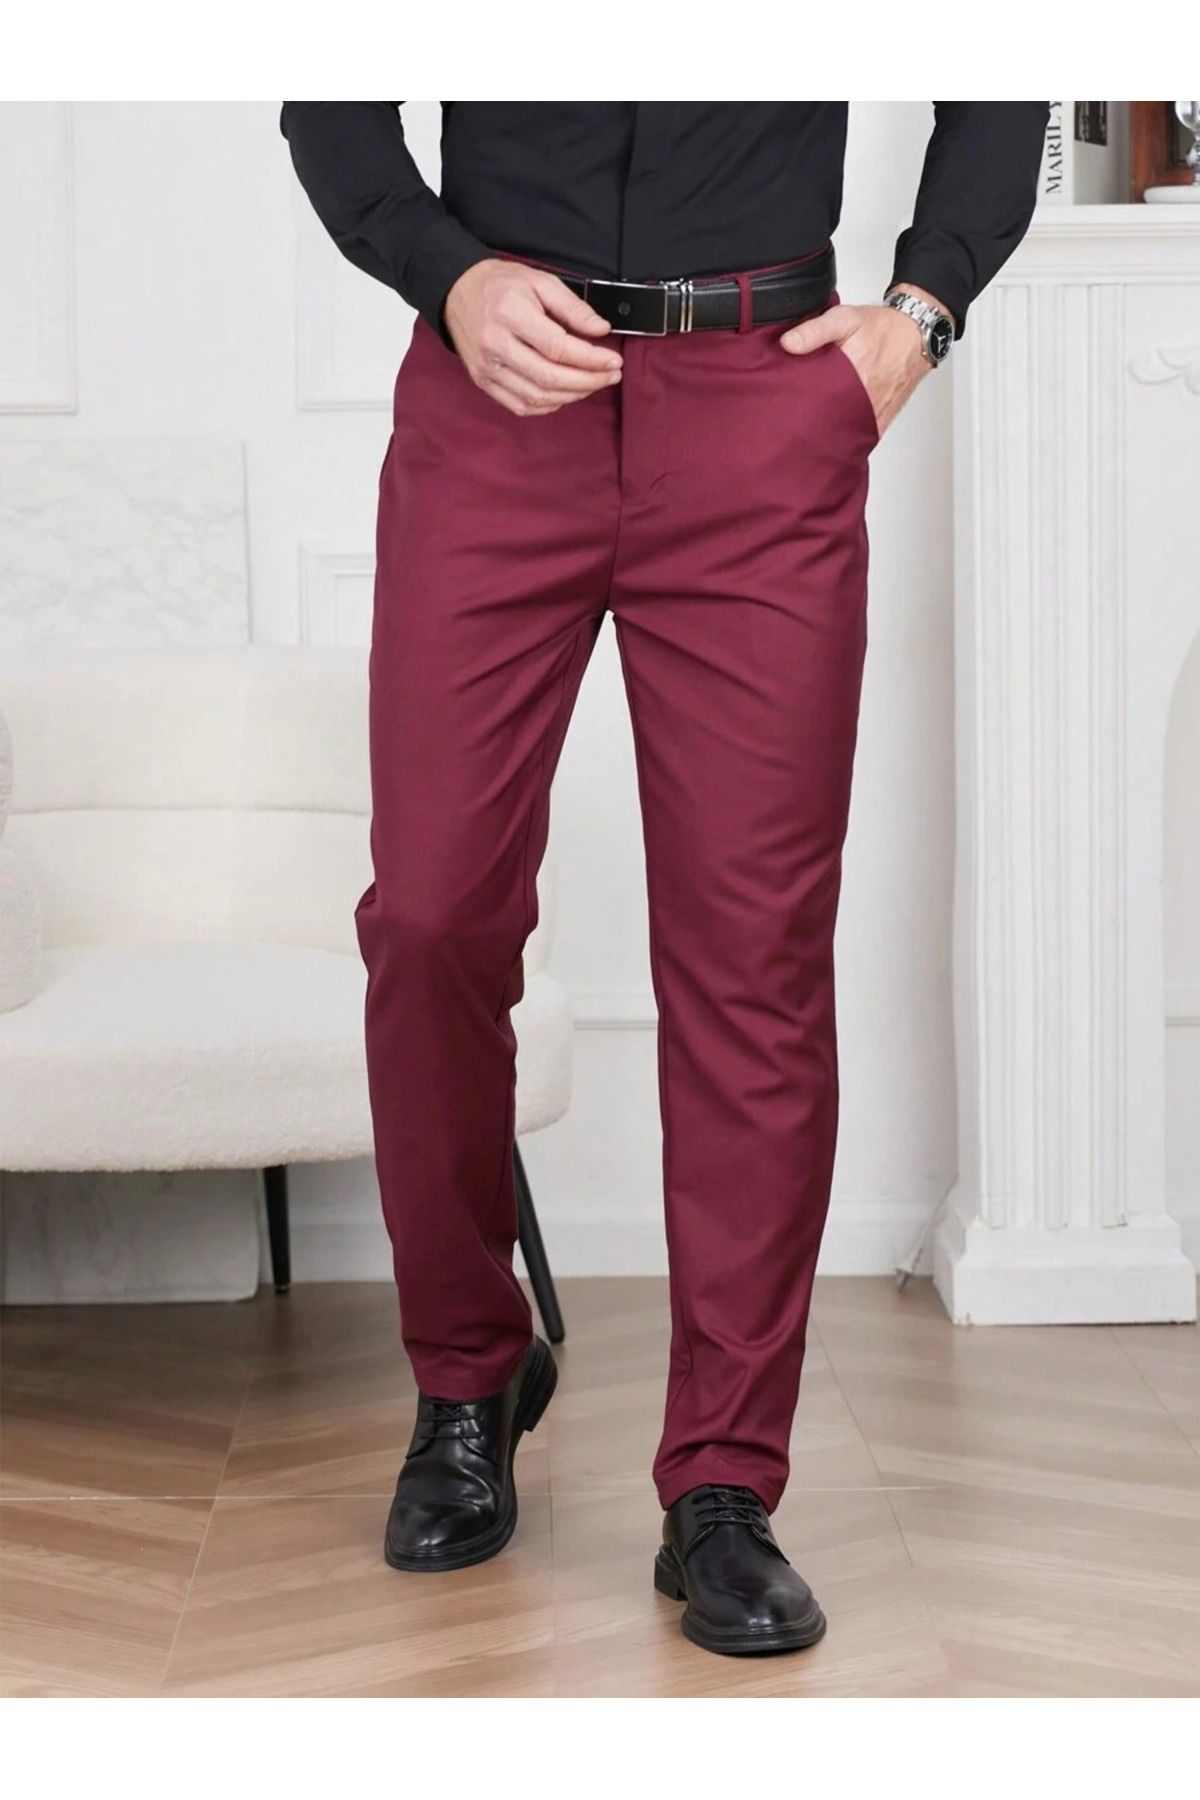 carwin Erkek Bordo Renk İtalyan Kesim Esnek Likralı Kumaş Pantolon